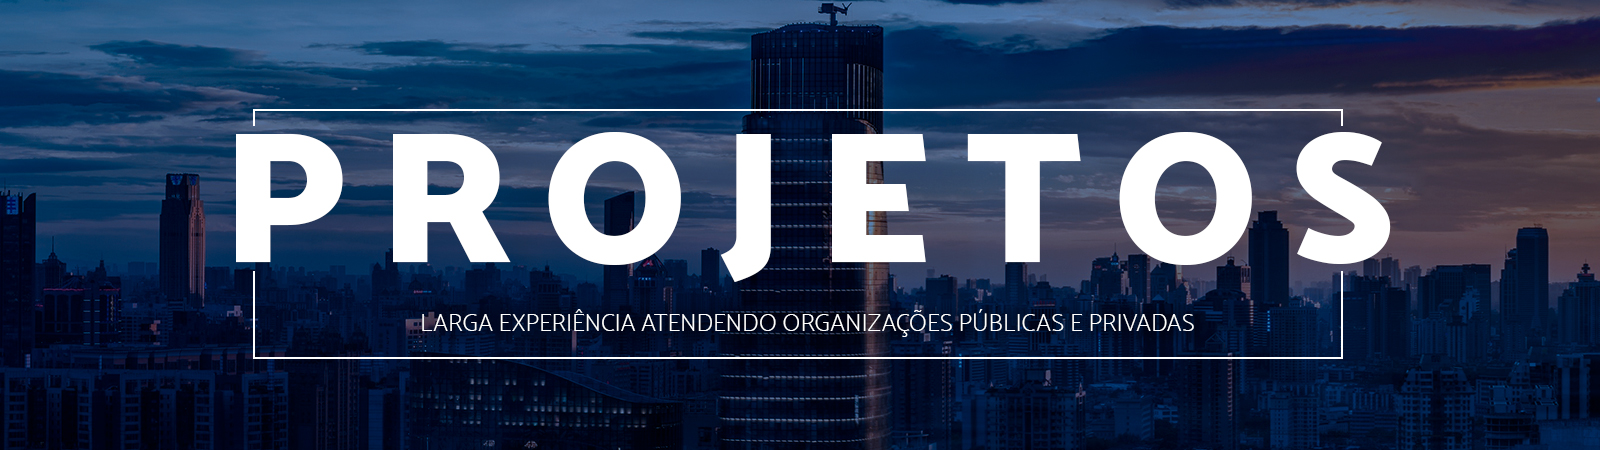 FIPECAFI - Cultura Contábil, Atuarial e Financeira no São Paulo Capital